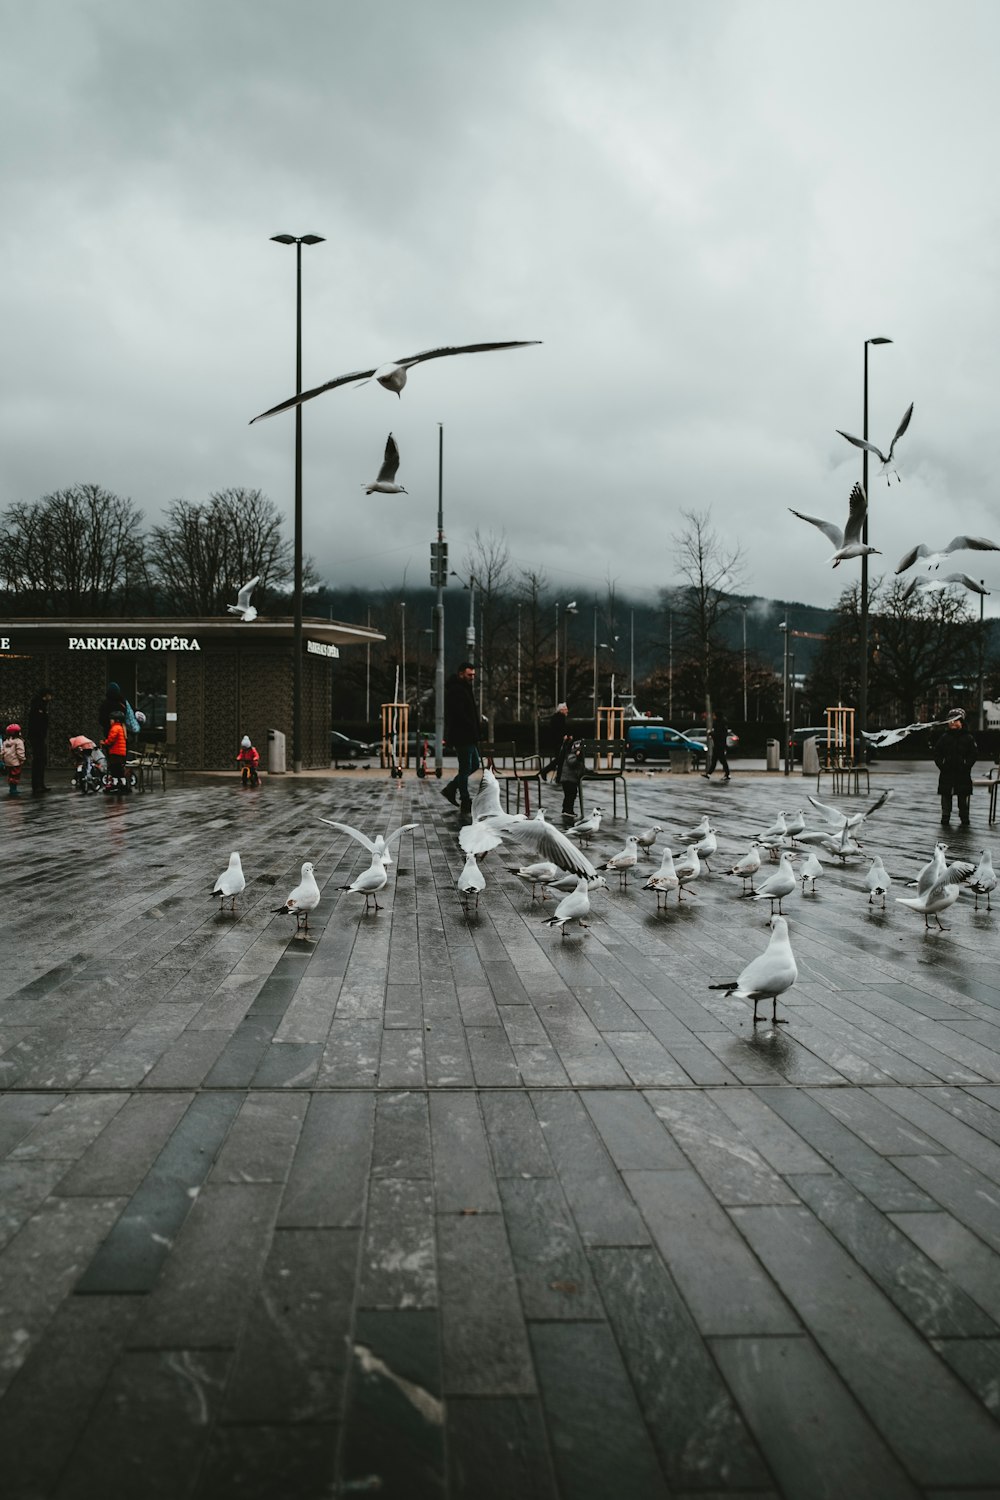 stormo di uccelli bianchi sul marciapiede di cemento grigio durante il giorno